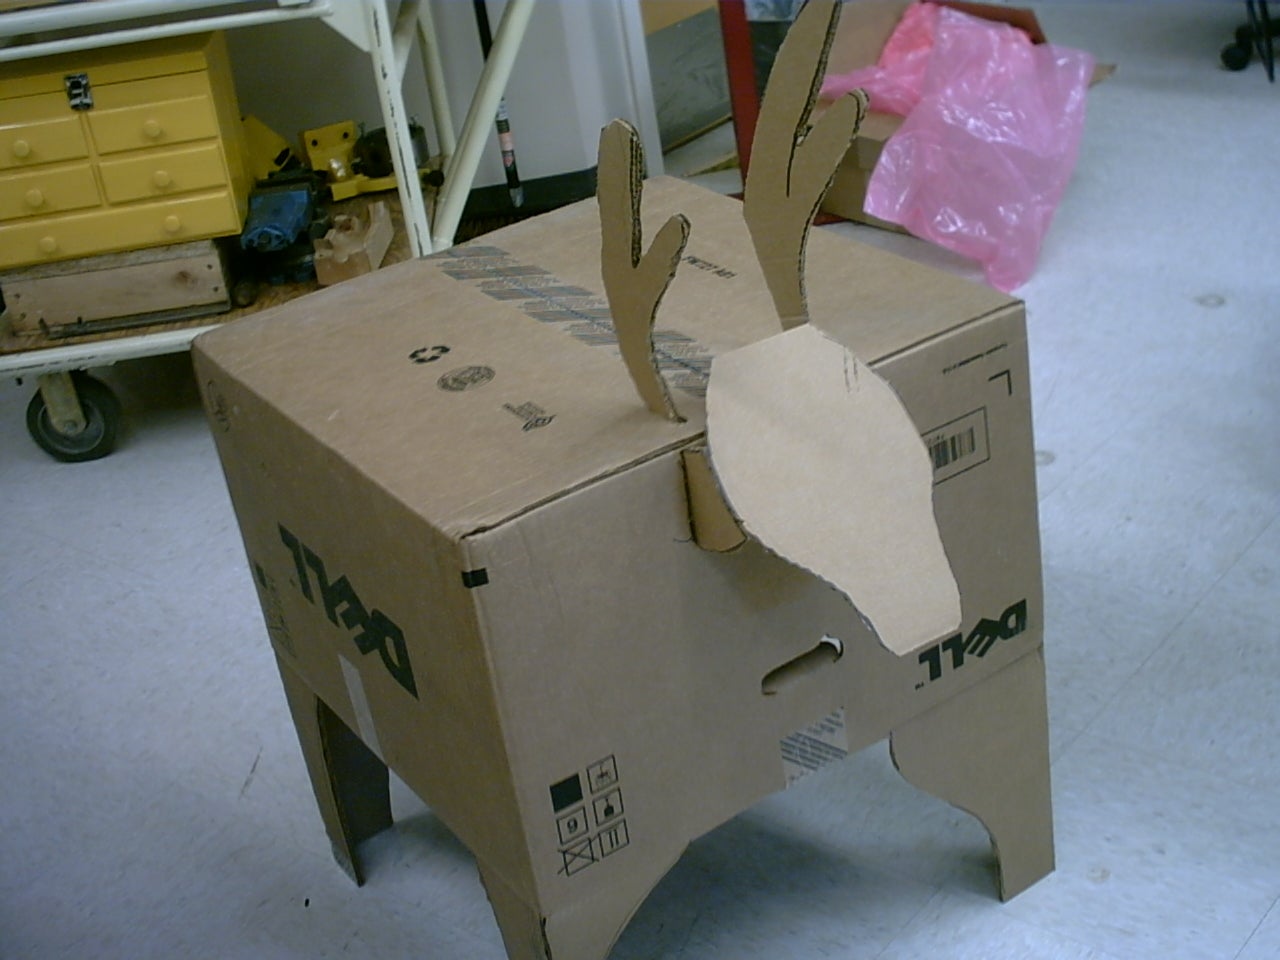 Make a Reindeer From a Computer Carton